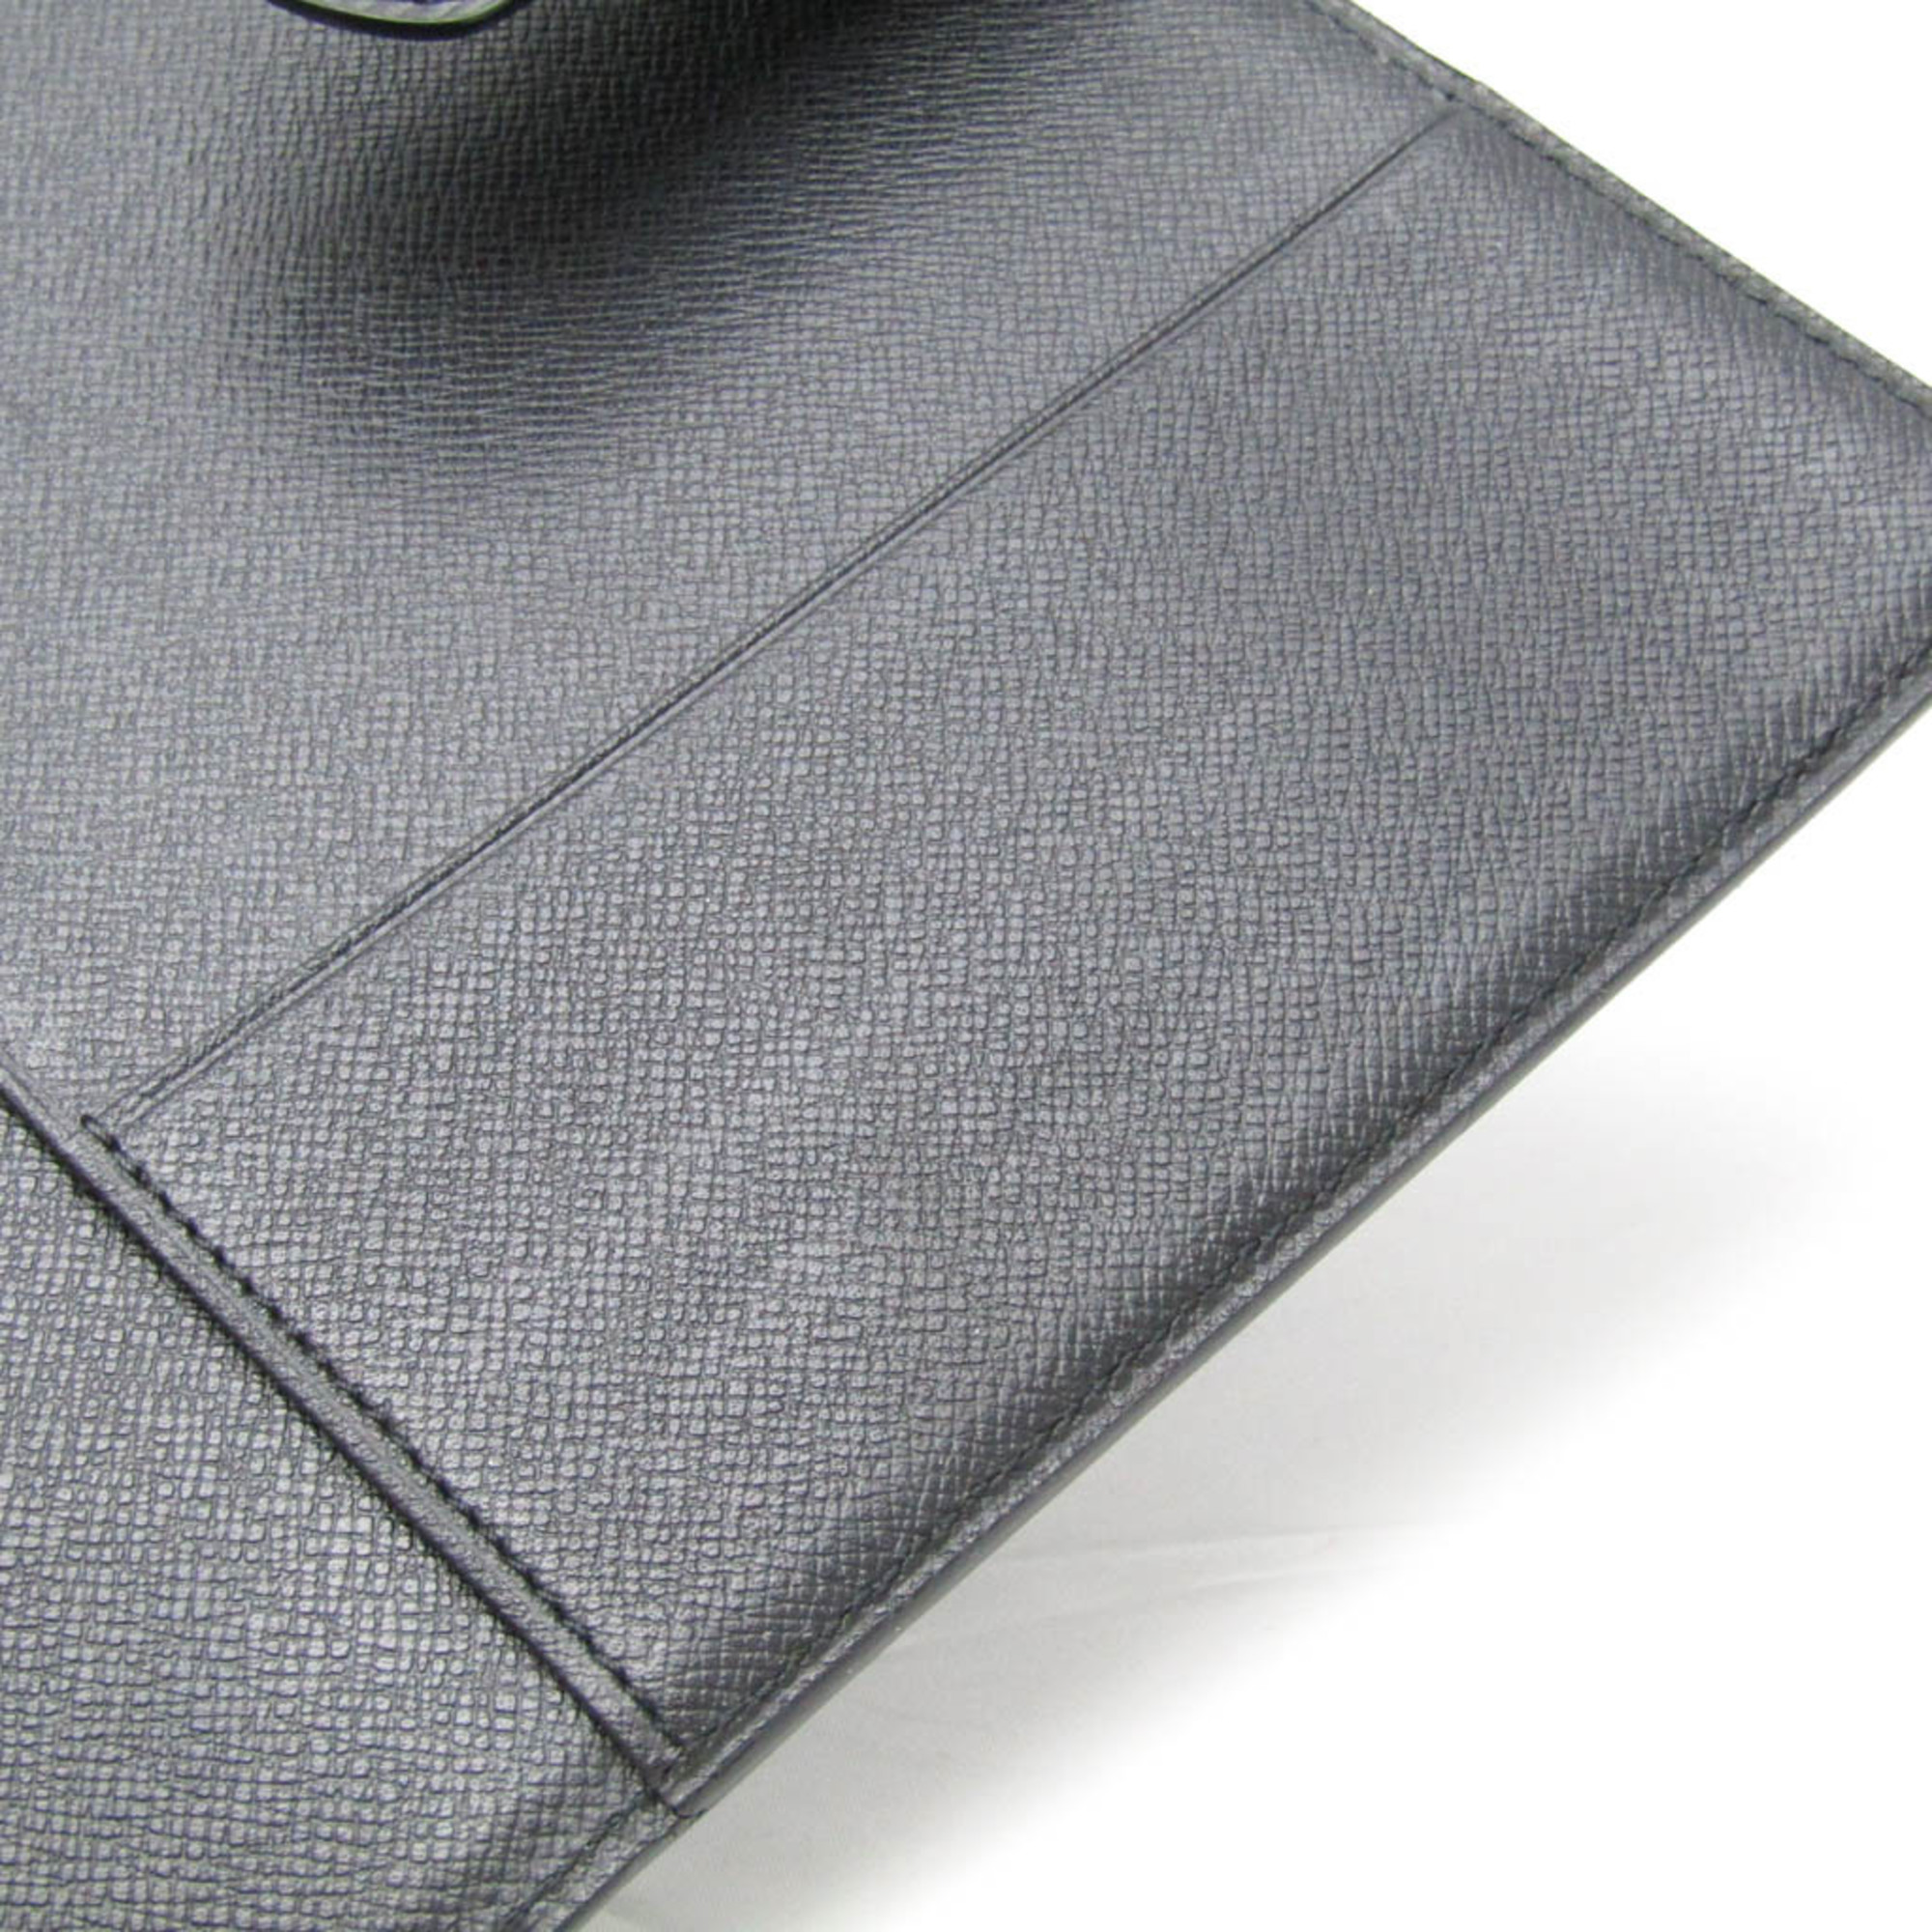 ルイ・ヴィトン(Louis Vuitton) エピ A5 手帳 ブラック アジェンダGM R20062